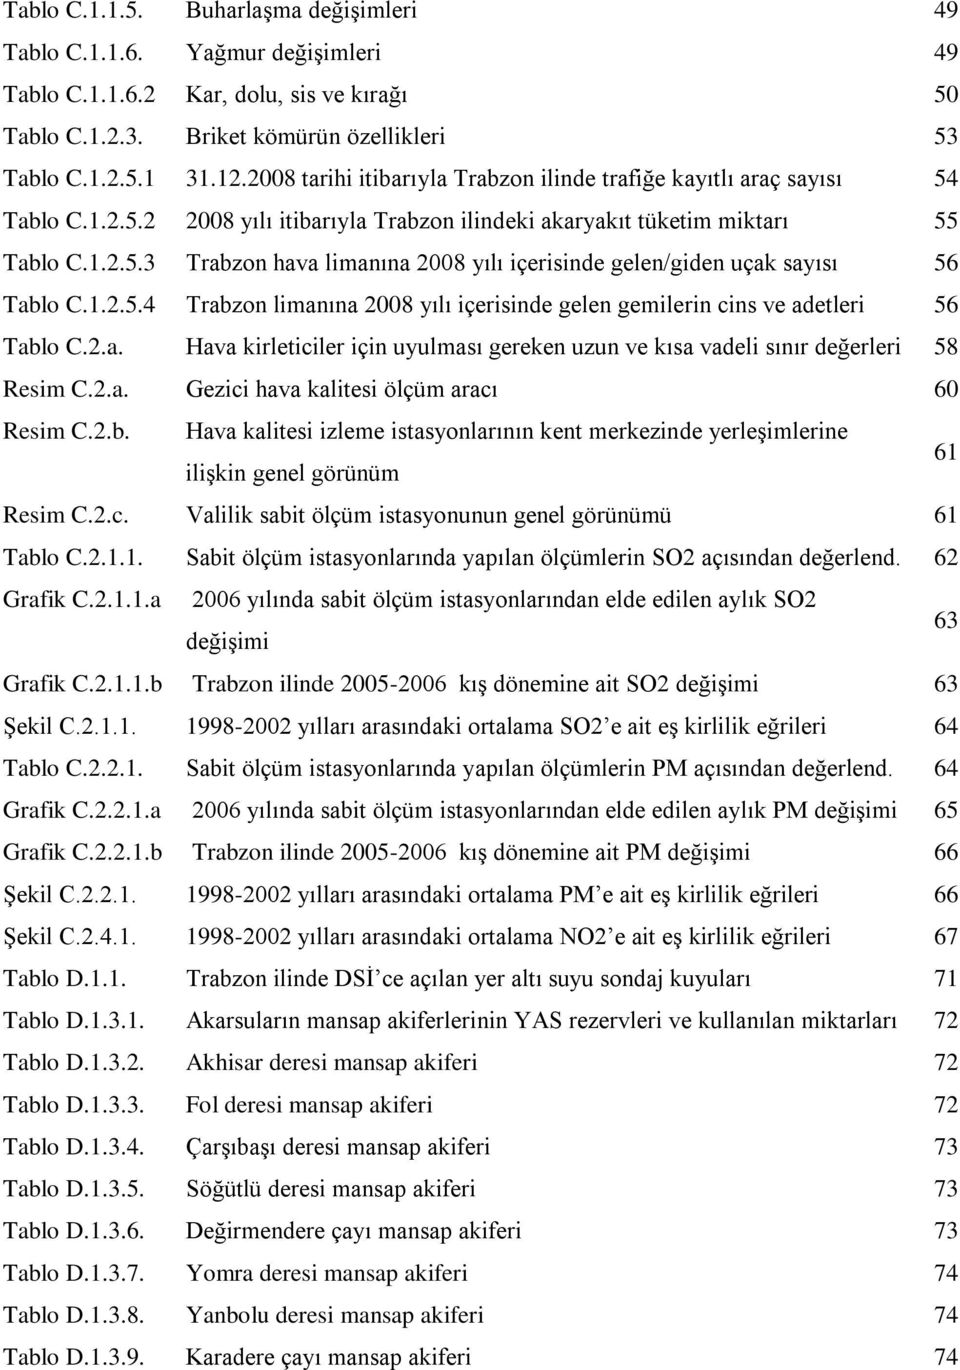 1.2.5.4 Trabzon limanına 2008 yılı içerisinde gelen gemilerin cins ve adetleri 56 Tablo C.2.a. Hava kirleticiler için uyulması gereken uzun ve kısa vadeli sınır değerleri 58 Resim C.2.a. Gezici hava kalitesi ölçüm aracı 60 Resim C.